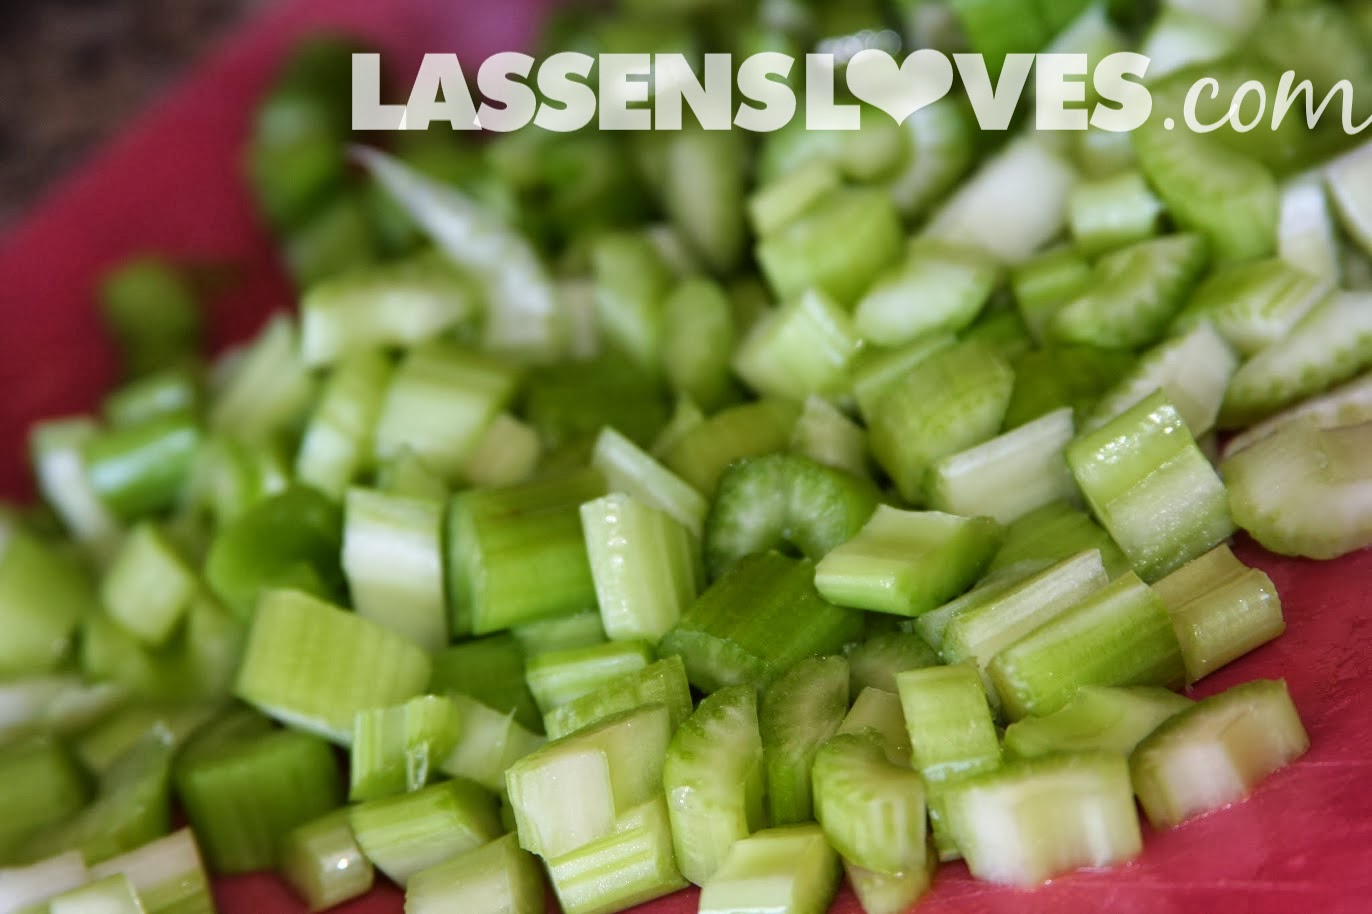 lassensloves.com, Lassen's, Lassens, waldorf+salad, grapes, apples, salad